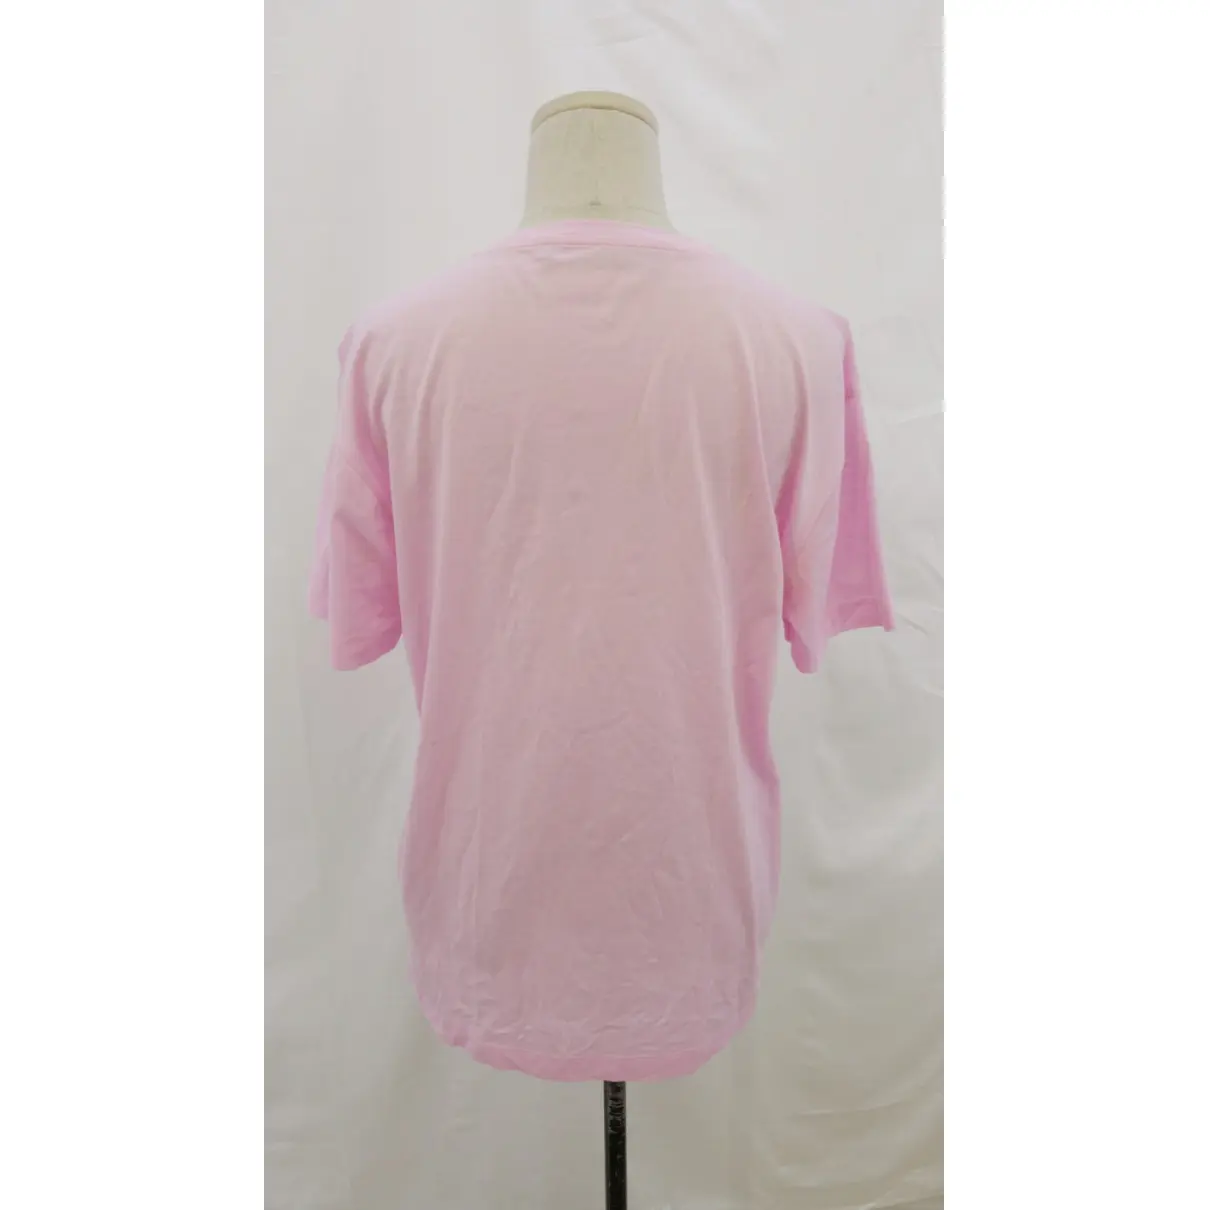 Buy Versace Pink Cotton Top online